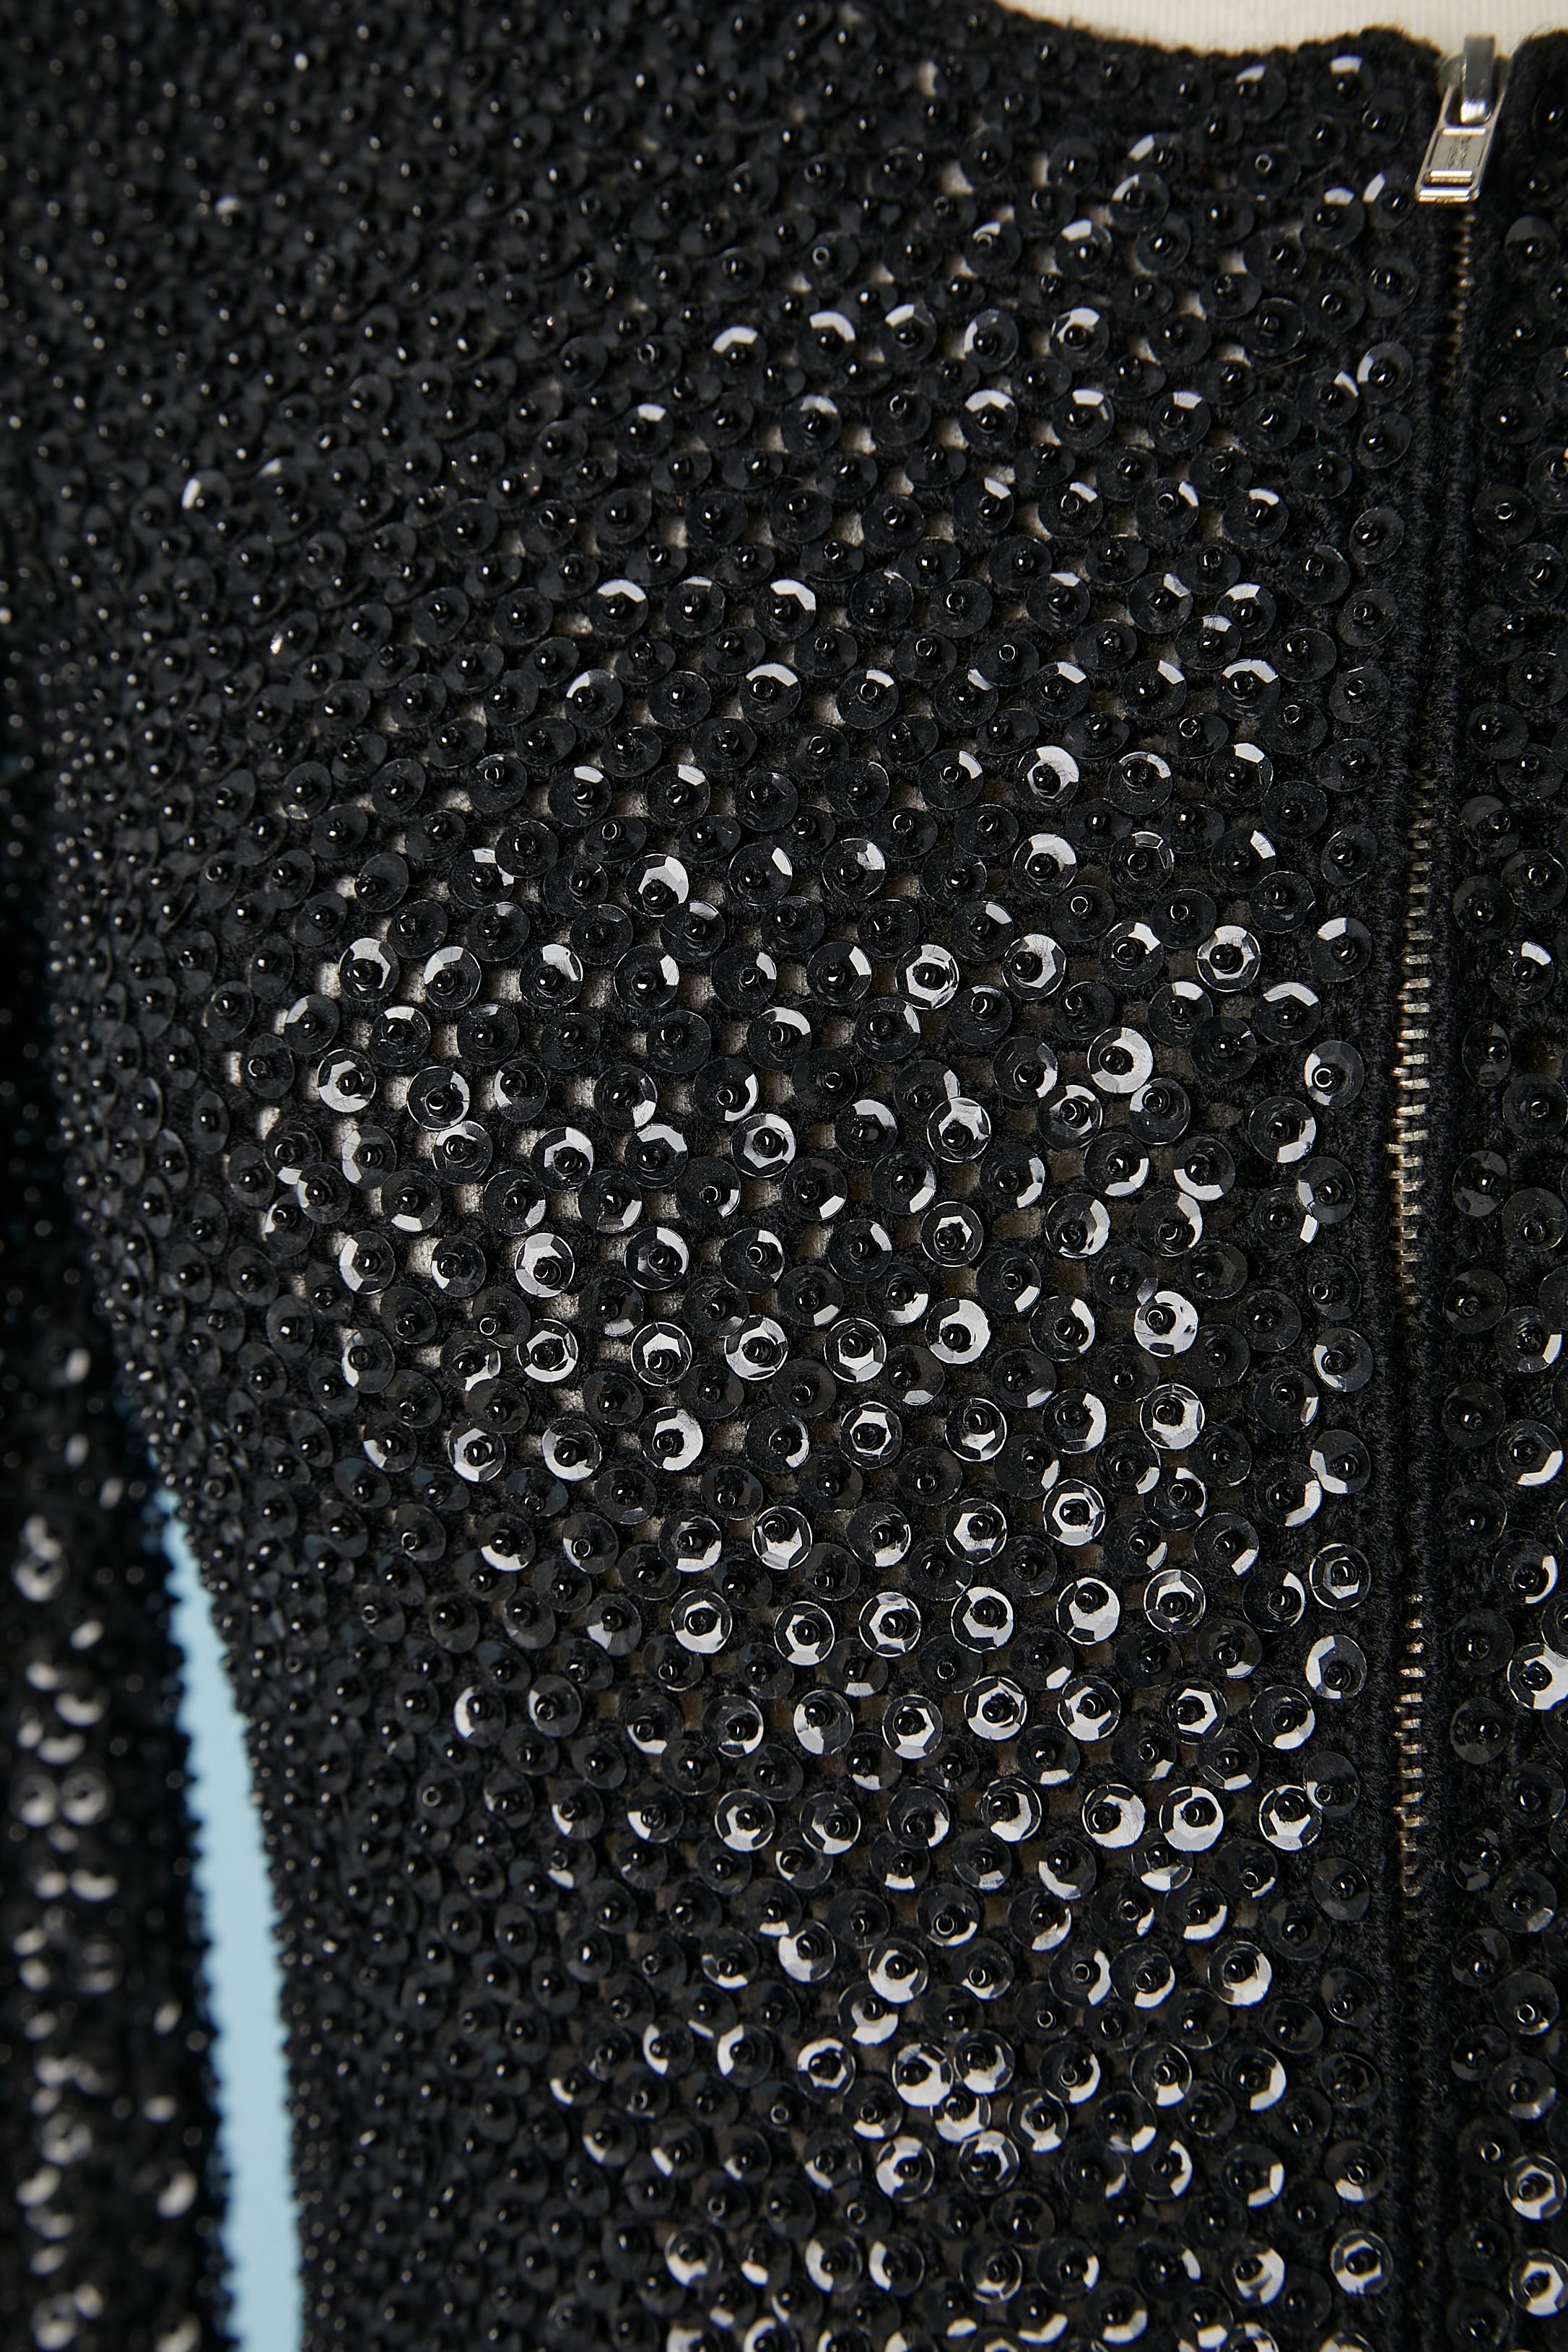 Schwarze Wollstrickjacke mit schwarzen Pailletten und Perlen besetzt. Reißverschluss in der vorderen Mitte. Kein Futter. 
GRÖSSE 40 (It) 36 (Fr) 6 (Us)